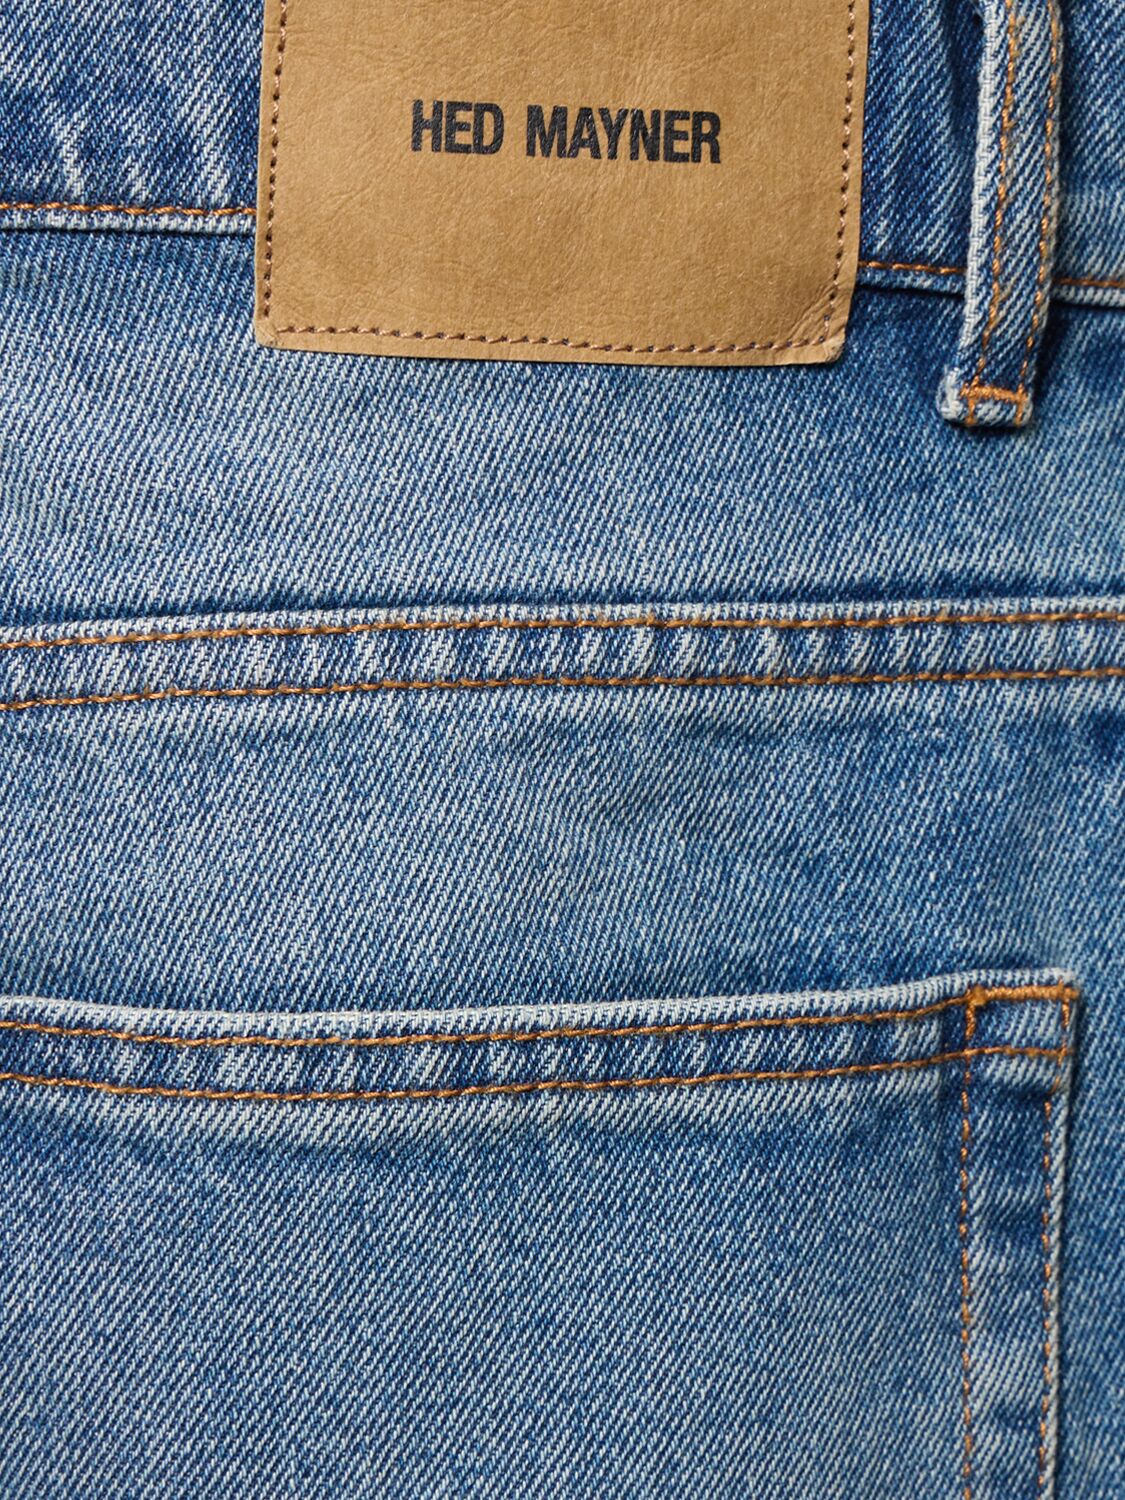 Shop Hed Mayner Cotton Denim Jeans In Blue